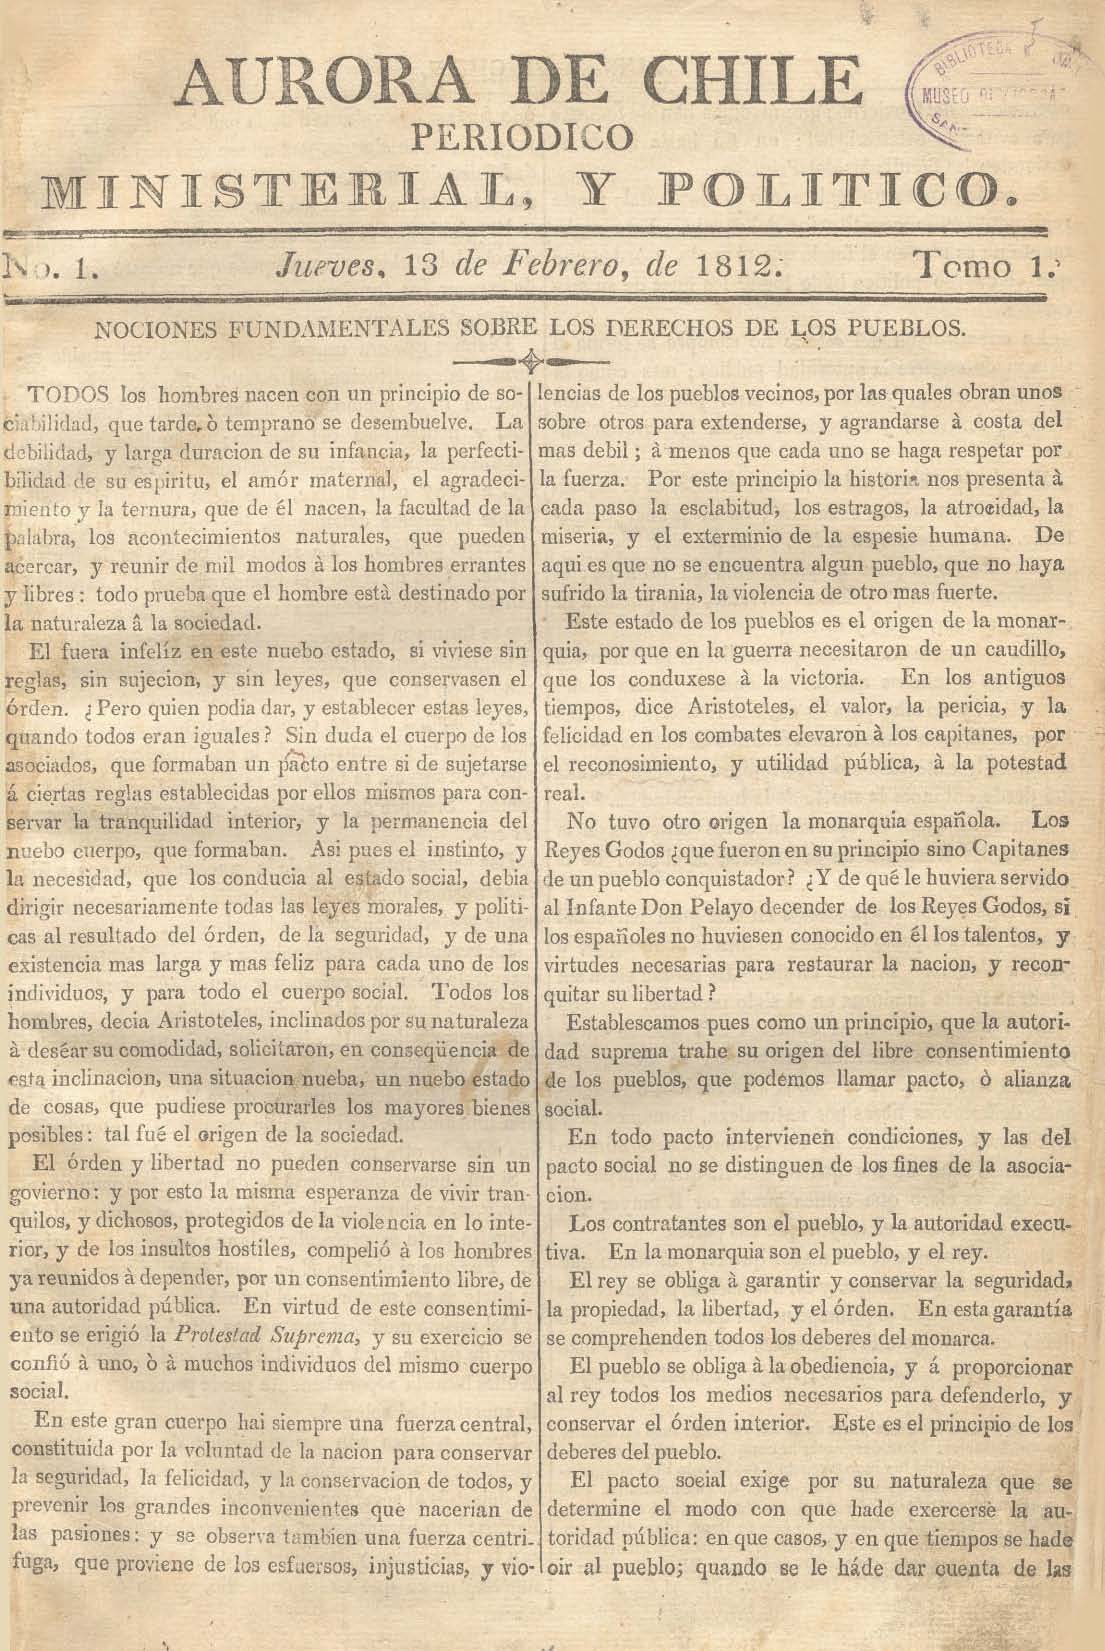 											Ver Núm. 11 (1813): Tomo II. Jueves 25 de Marzo
										